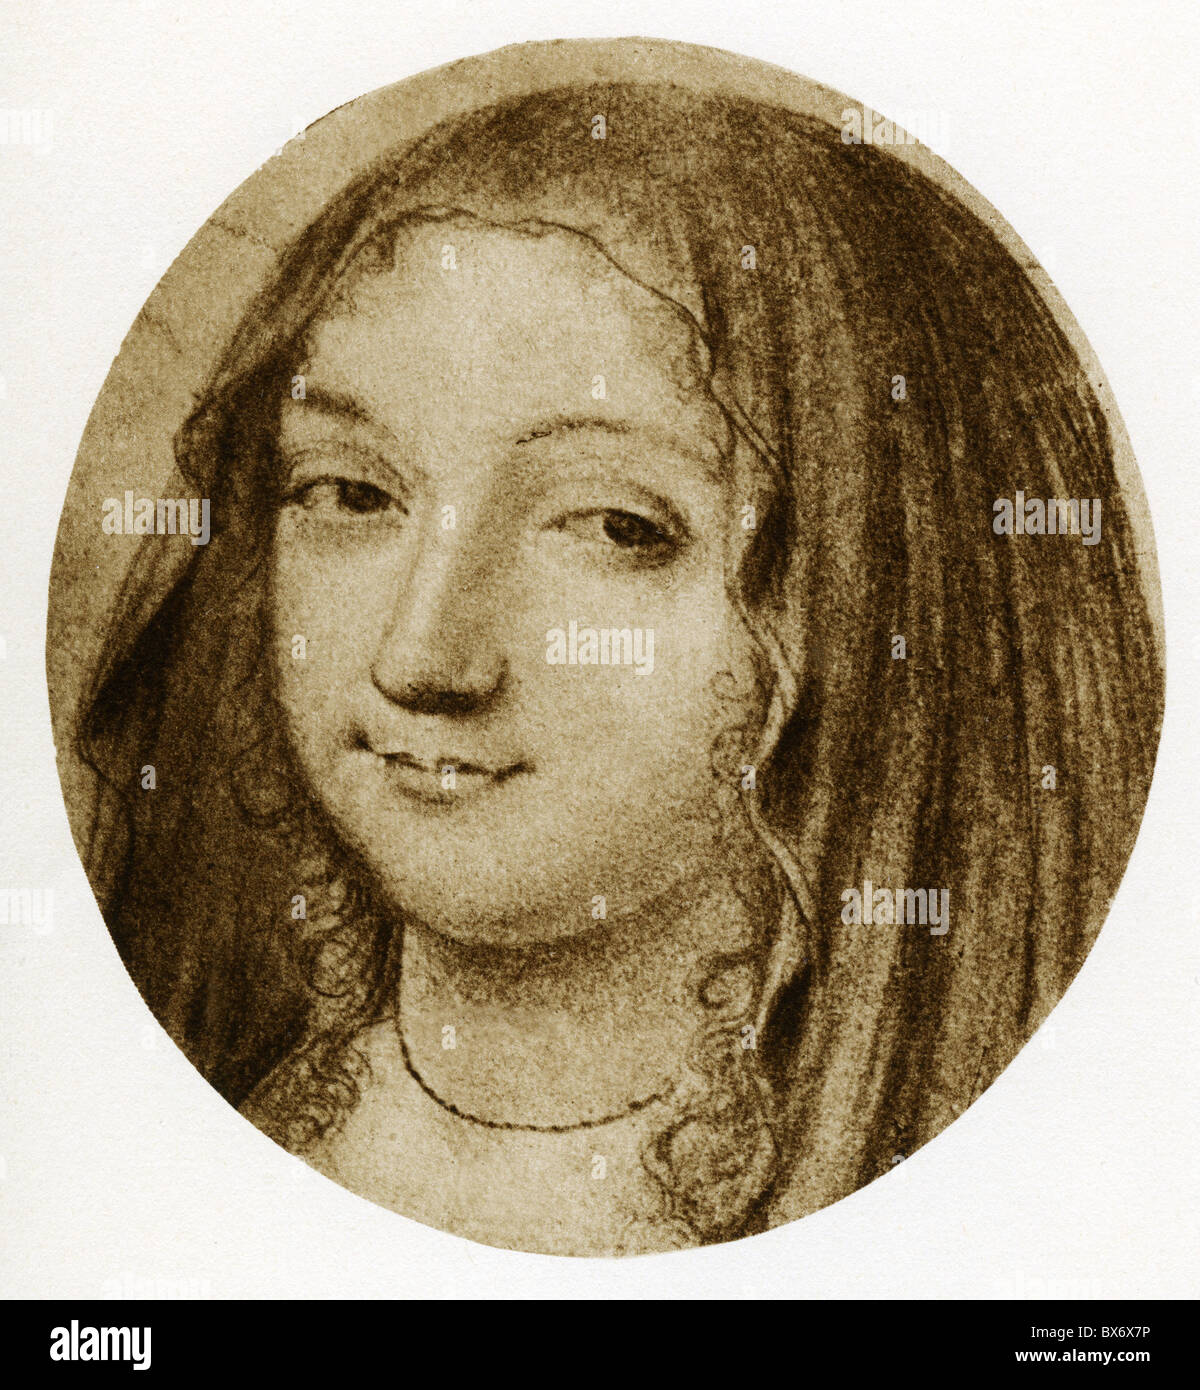 Rohan-Montbazon, Marie Aimee de, dicembre 1600 - 12.8.1679, signora della corte francese, ritratto, disegno a matita, circa 1645, , Foto Stock